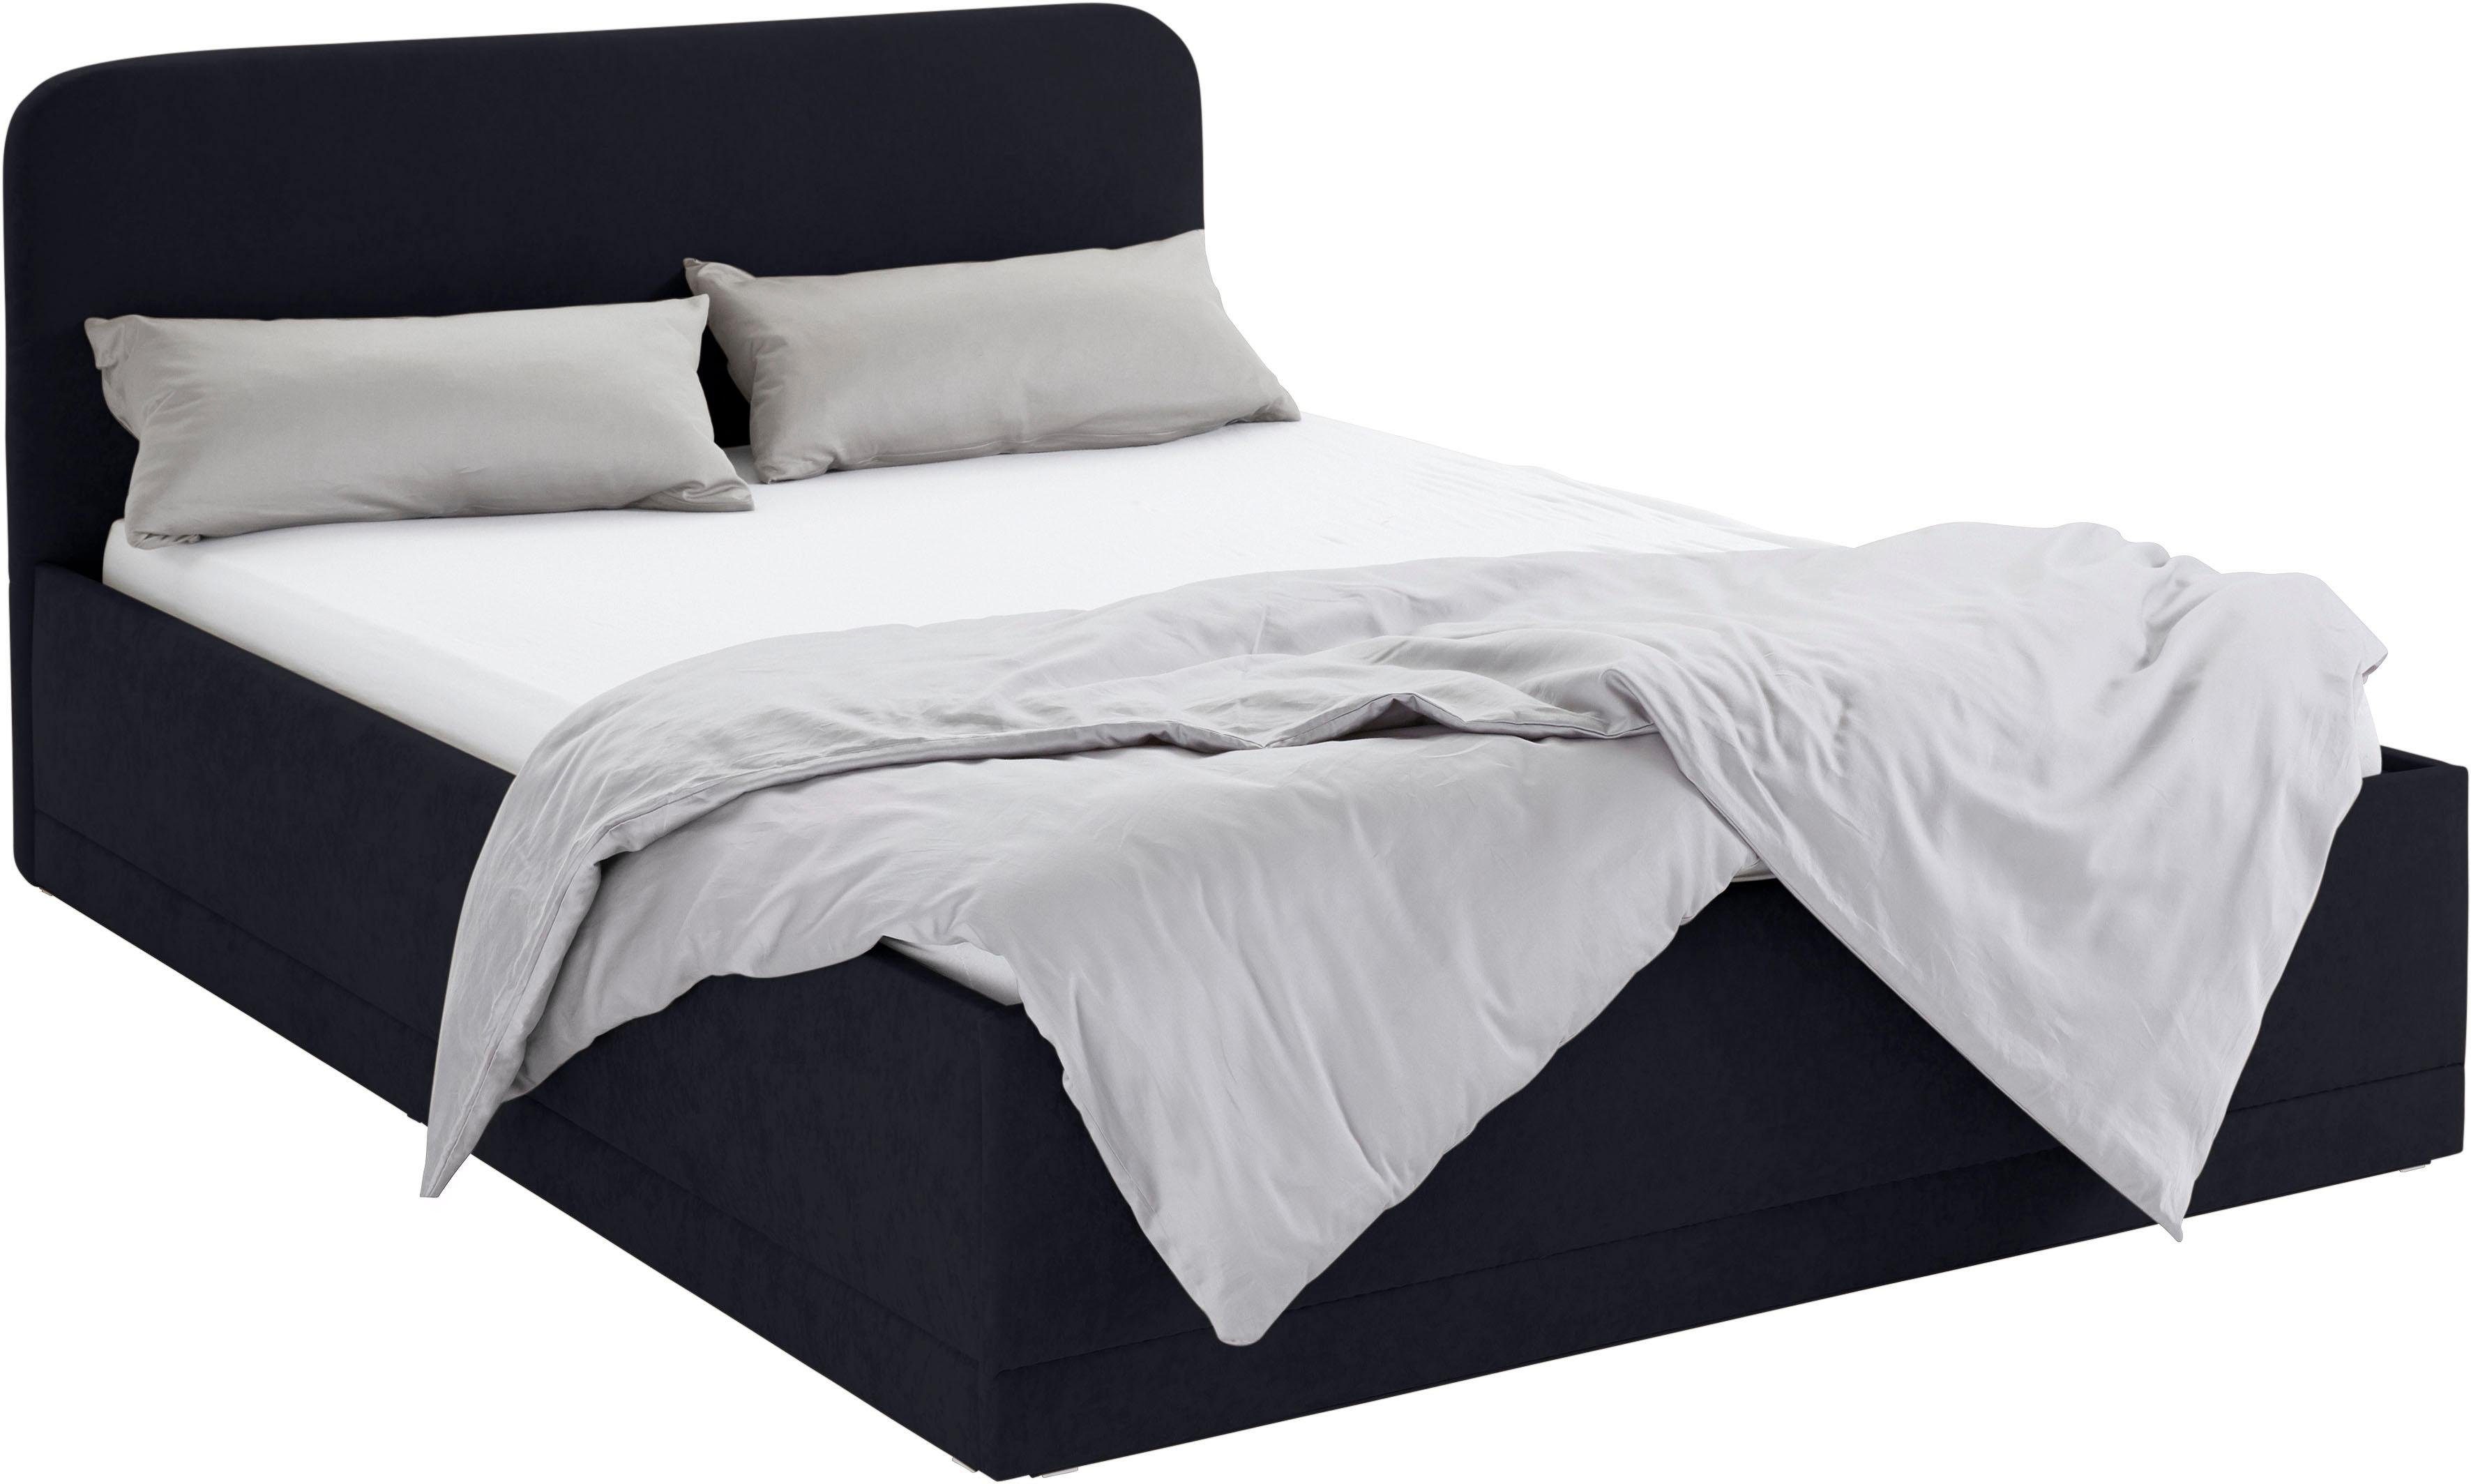 Westfalia Schlafkomfort Polsterbett, inkl. Bettkasten bei Ausführung mit  Matratze, Farbige Einsteck-Tagesdecke bitte separat bestellen